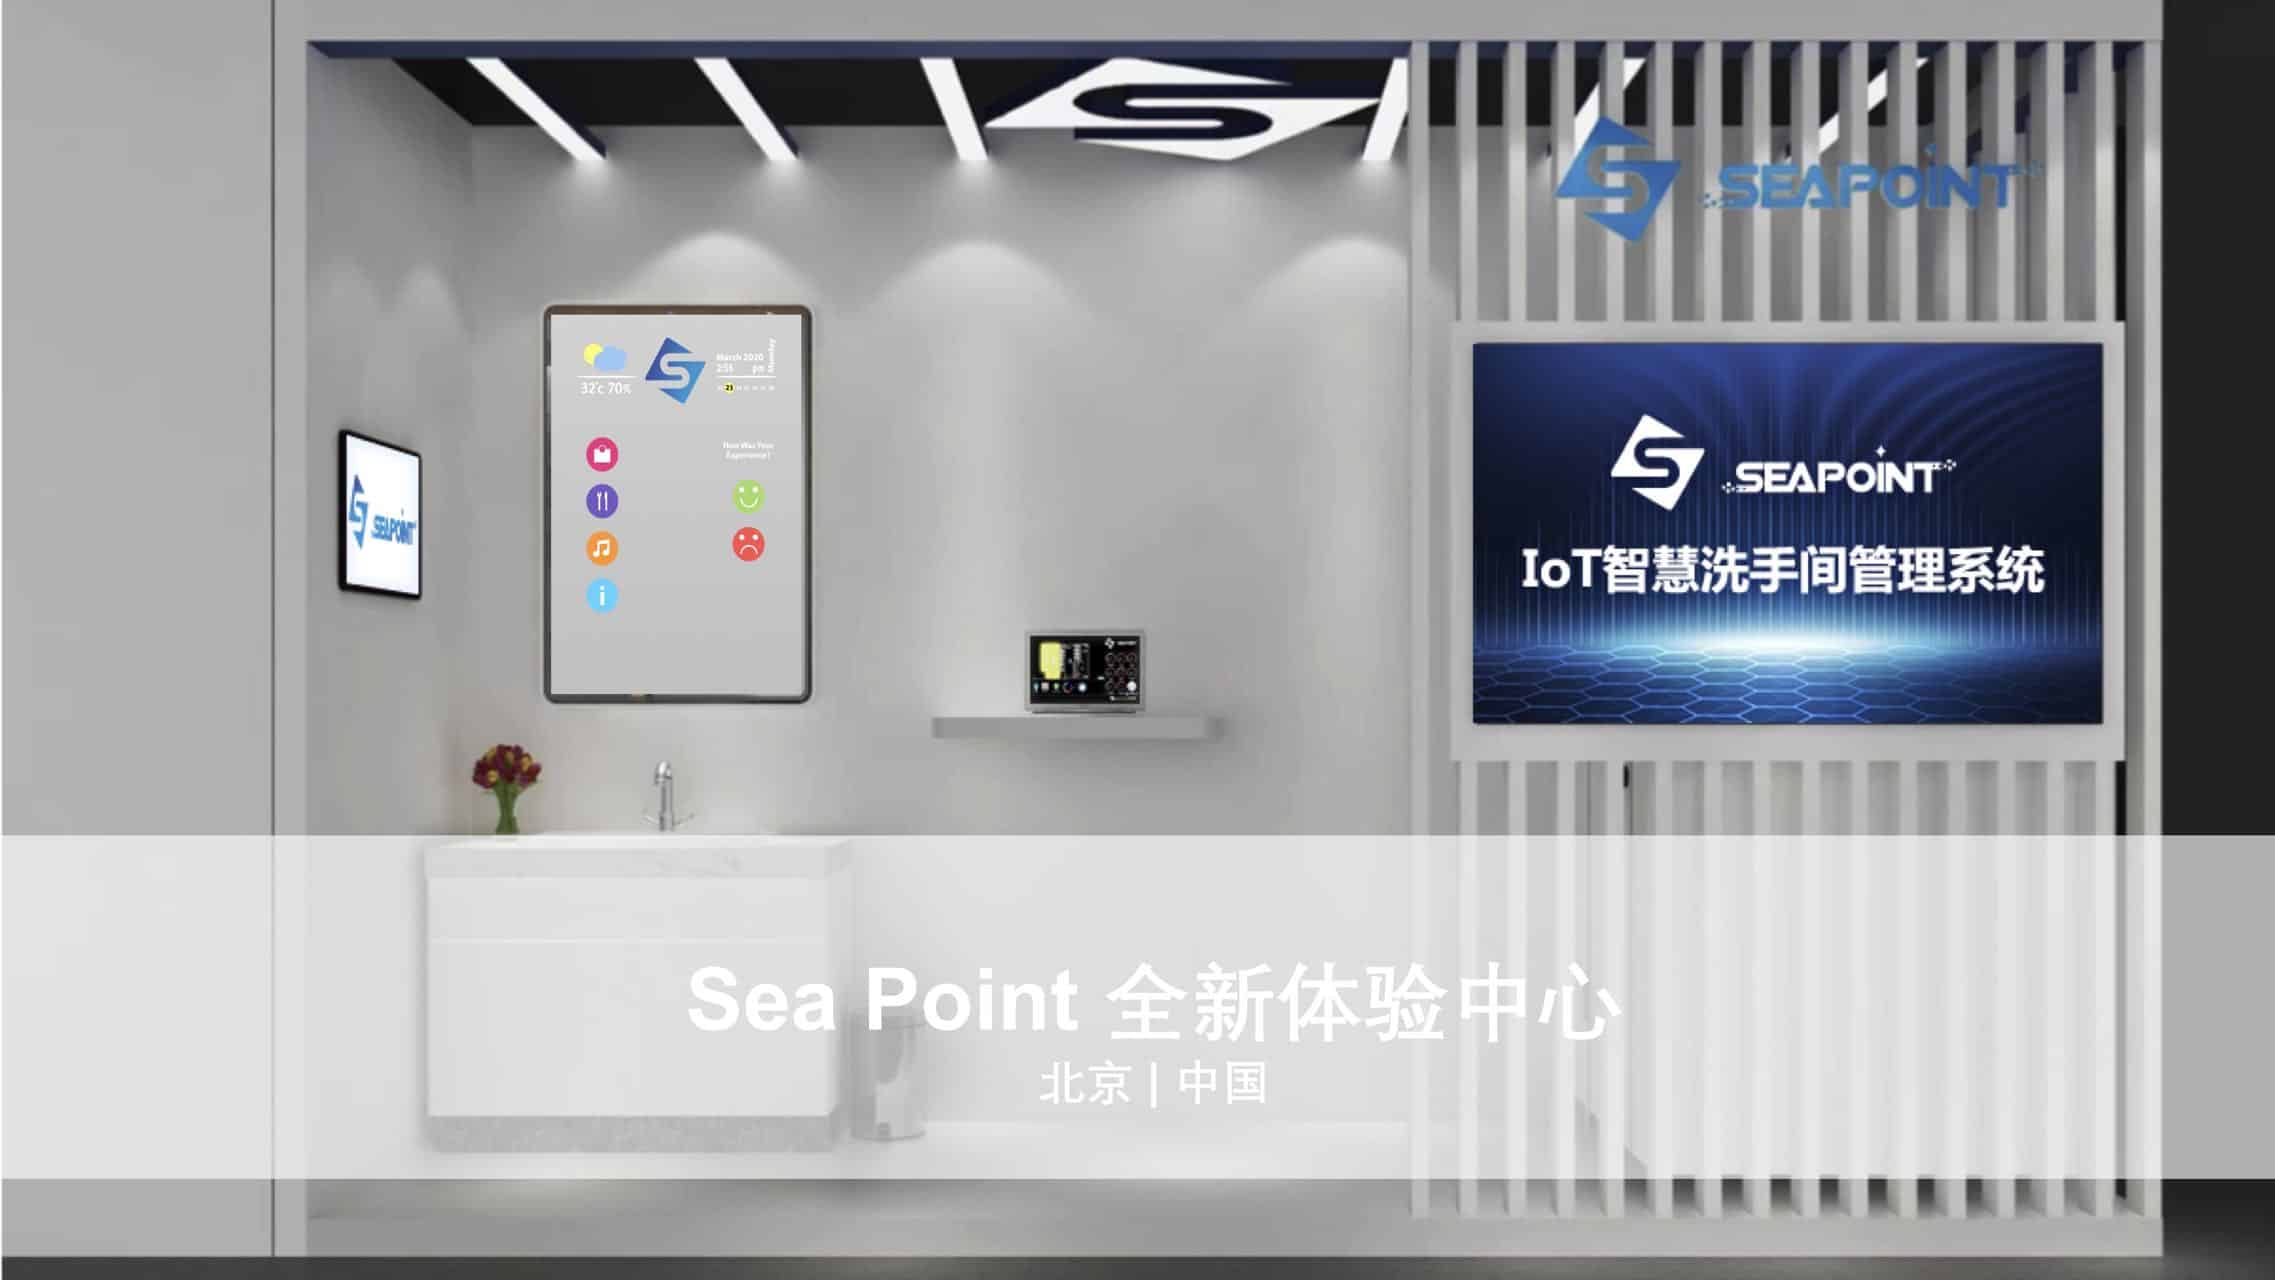 Sea Point 智慧物联体验中心落地北京落地， 为商业客户打造更优秀的数智化体验